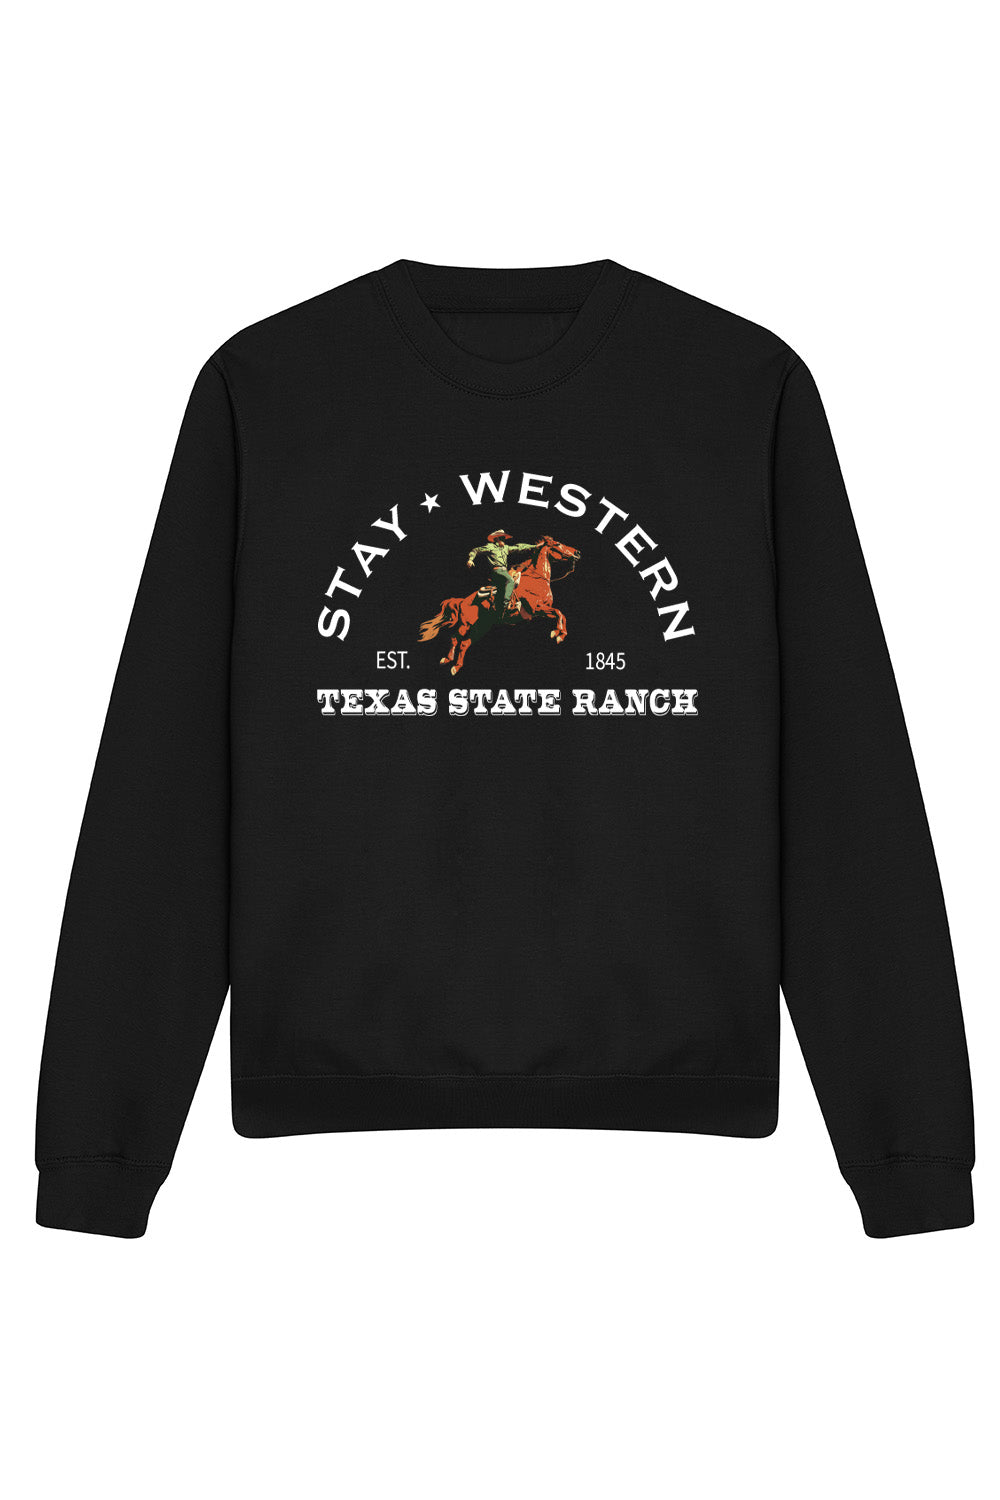 Stay Western Sweatshirt In Black (Custom Pack)